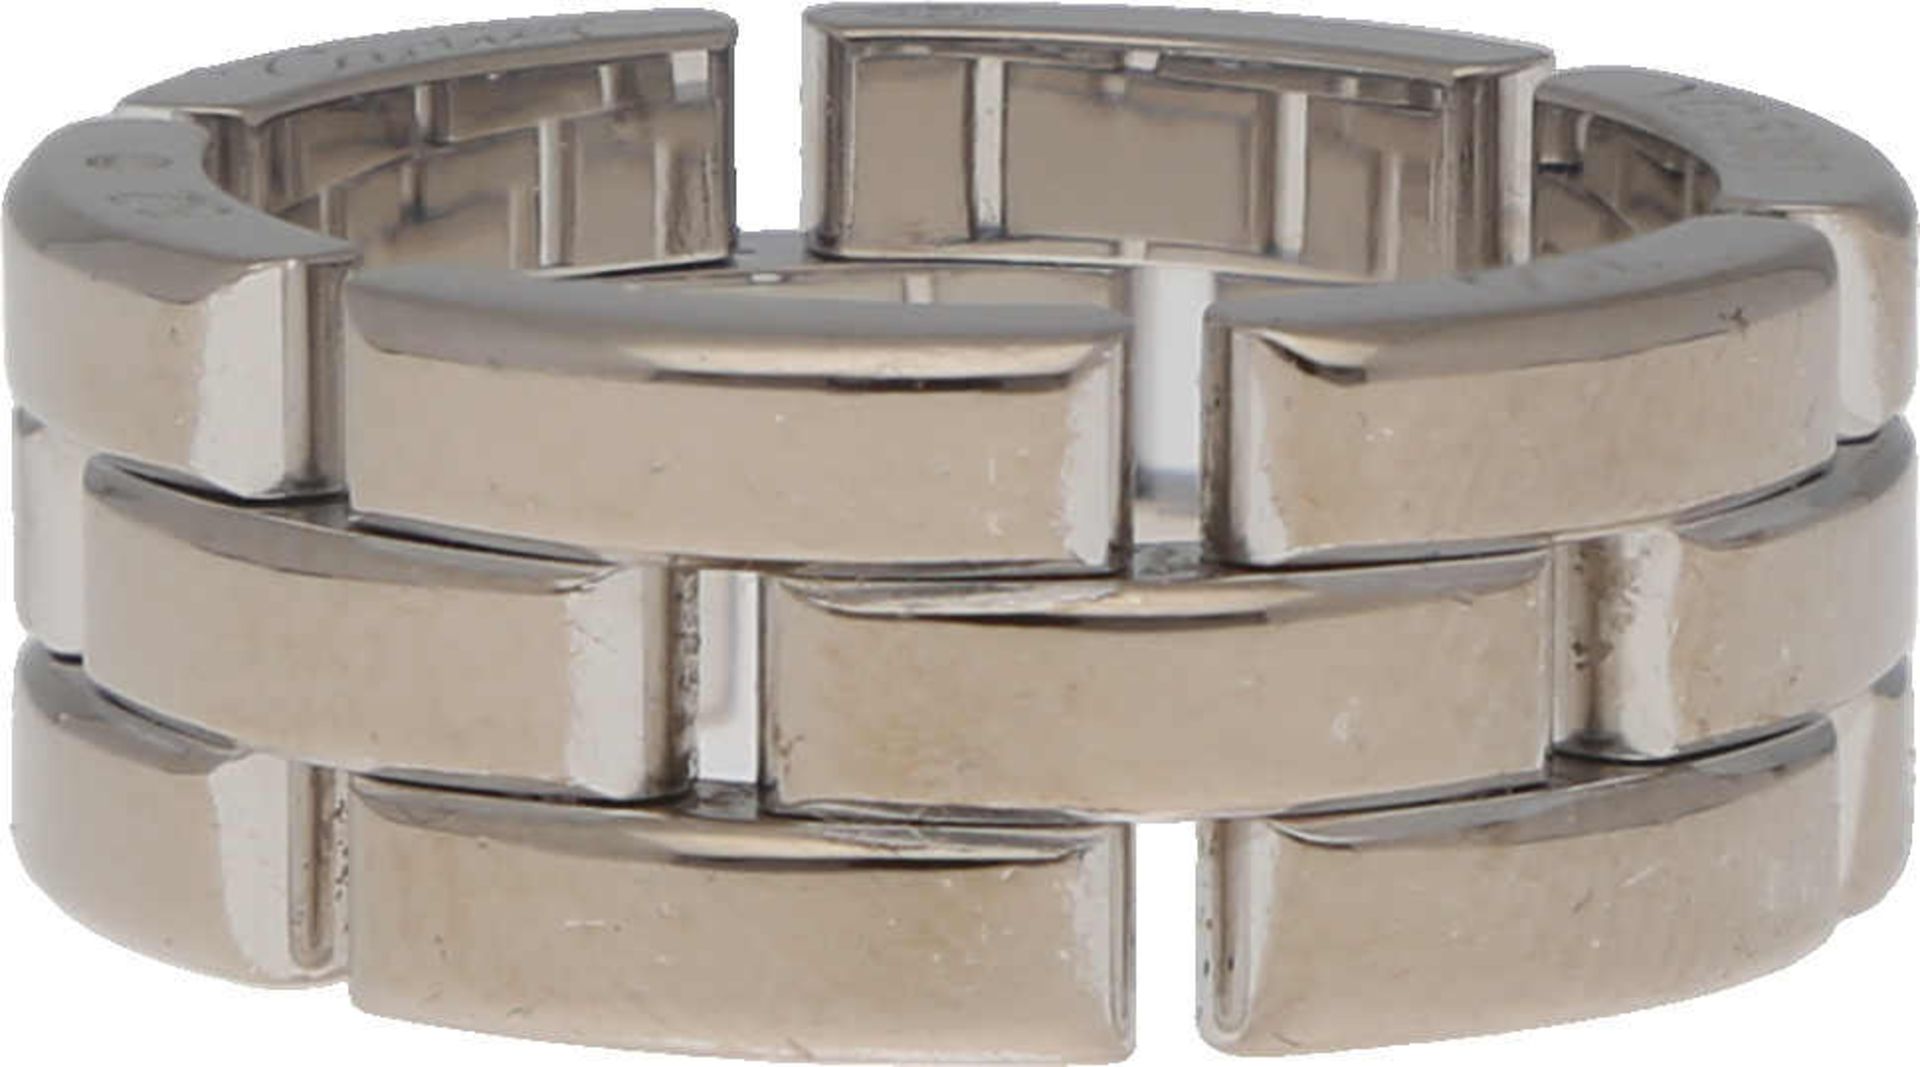 CARTIER Ring Maillon Panthère Ring von Cartier in Weissgold 18K poliert, Breite 2 cm, Ringgrösse 52,